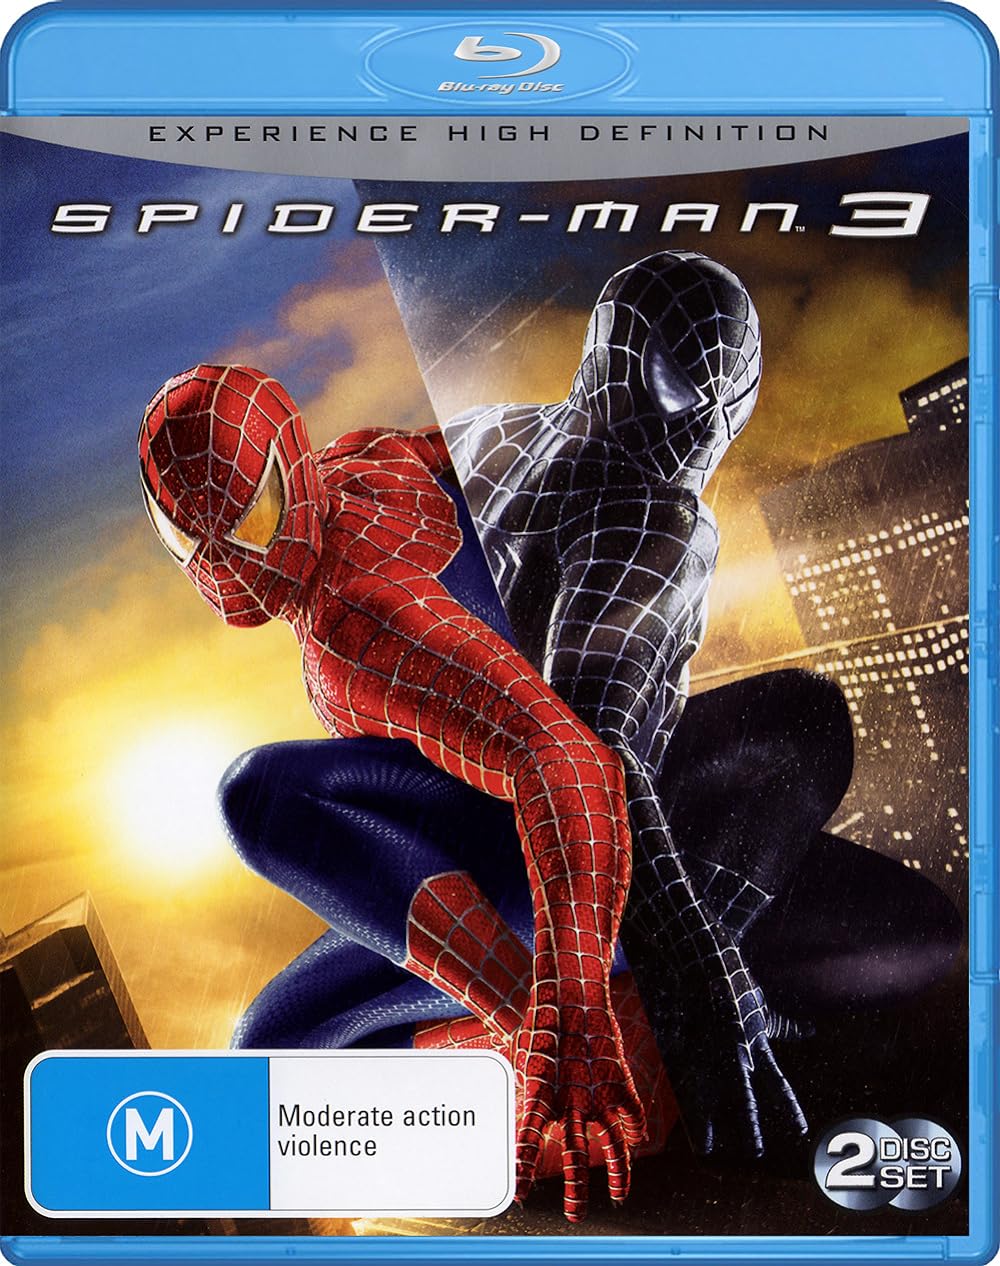 Spider-Man 3 (2007) 640Kbps 23.976Fps 48Khz 5.1Ch BluRay Turkish Audio TAC